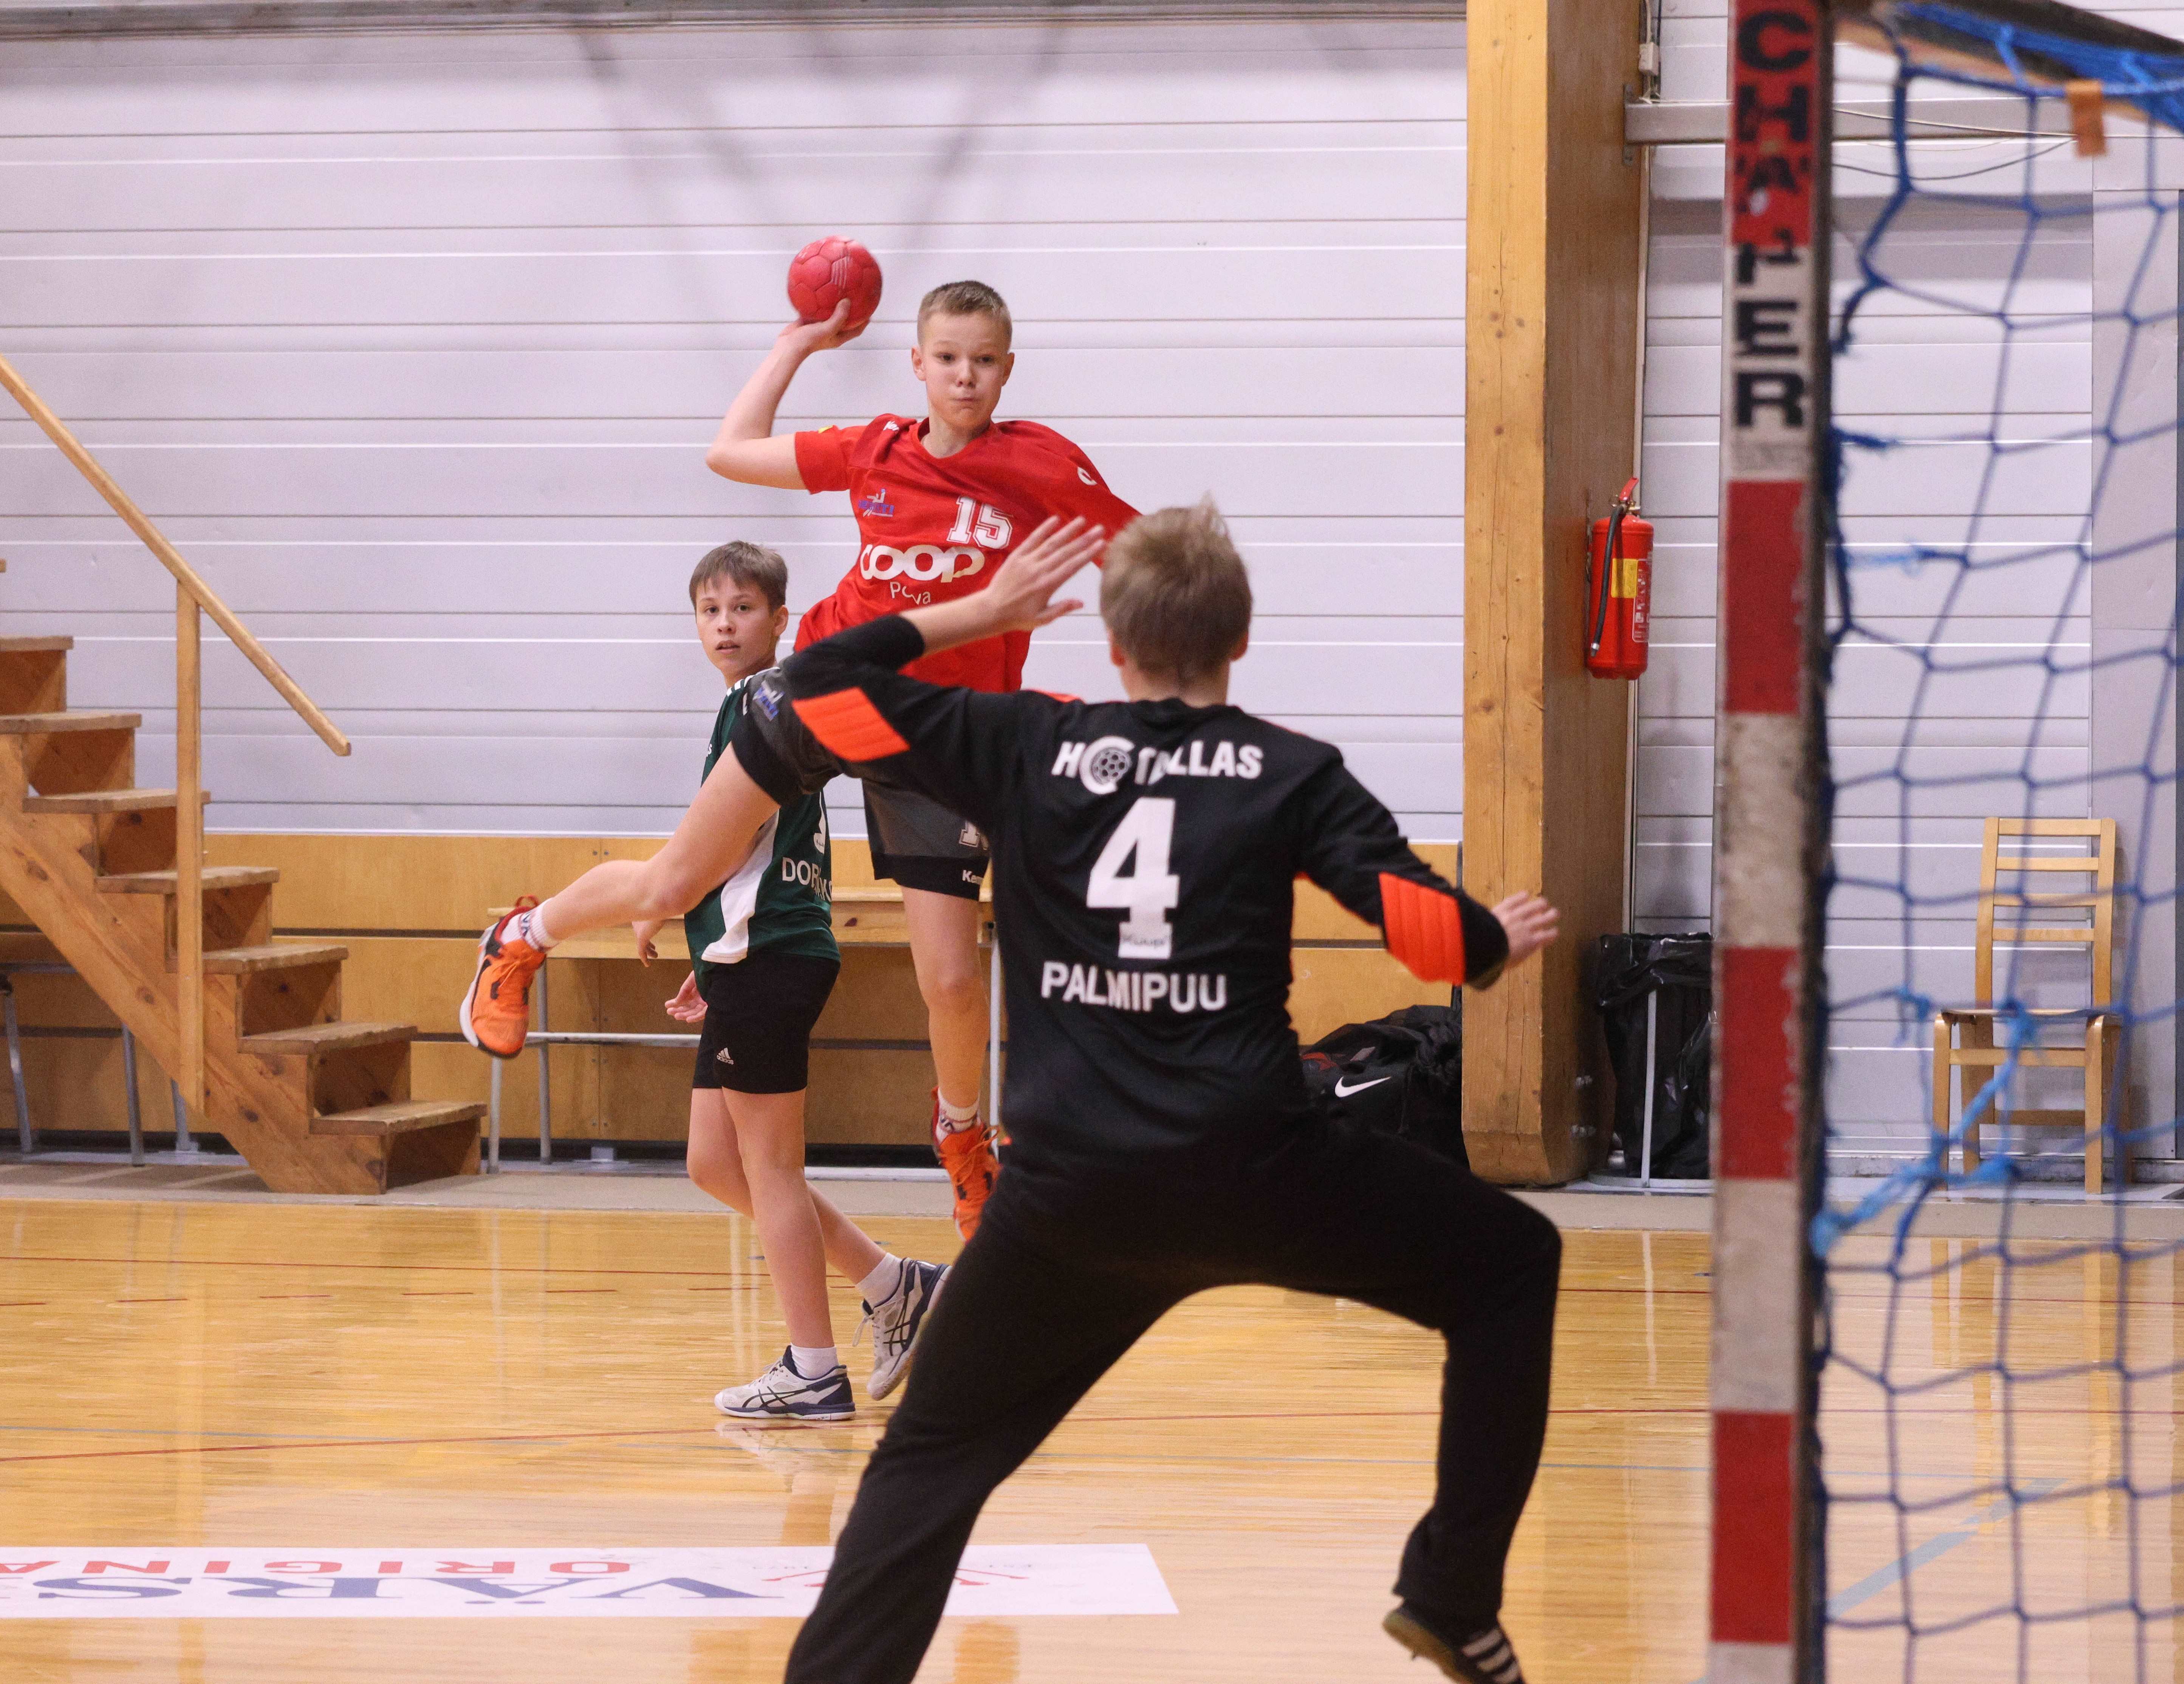 Nädalavahetusel jätkuvad Viimsis noormeeste C vanuseklassi 2024 Eesti meistrivõistlused käsipallis II etapi mängudega